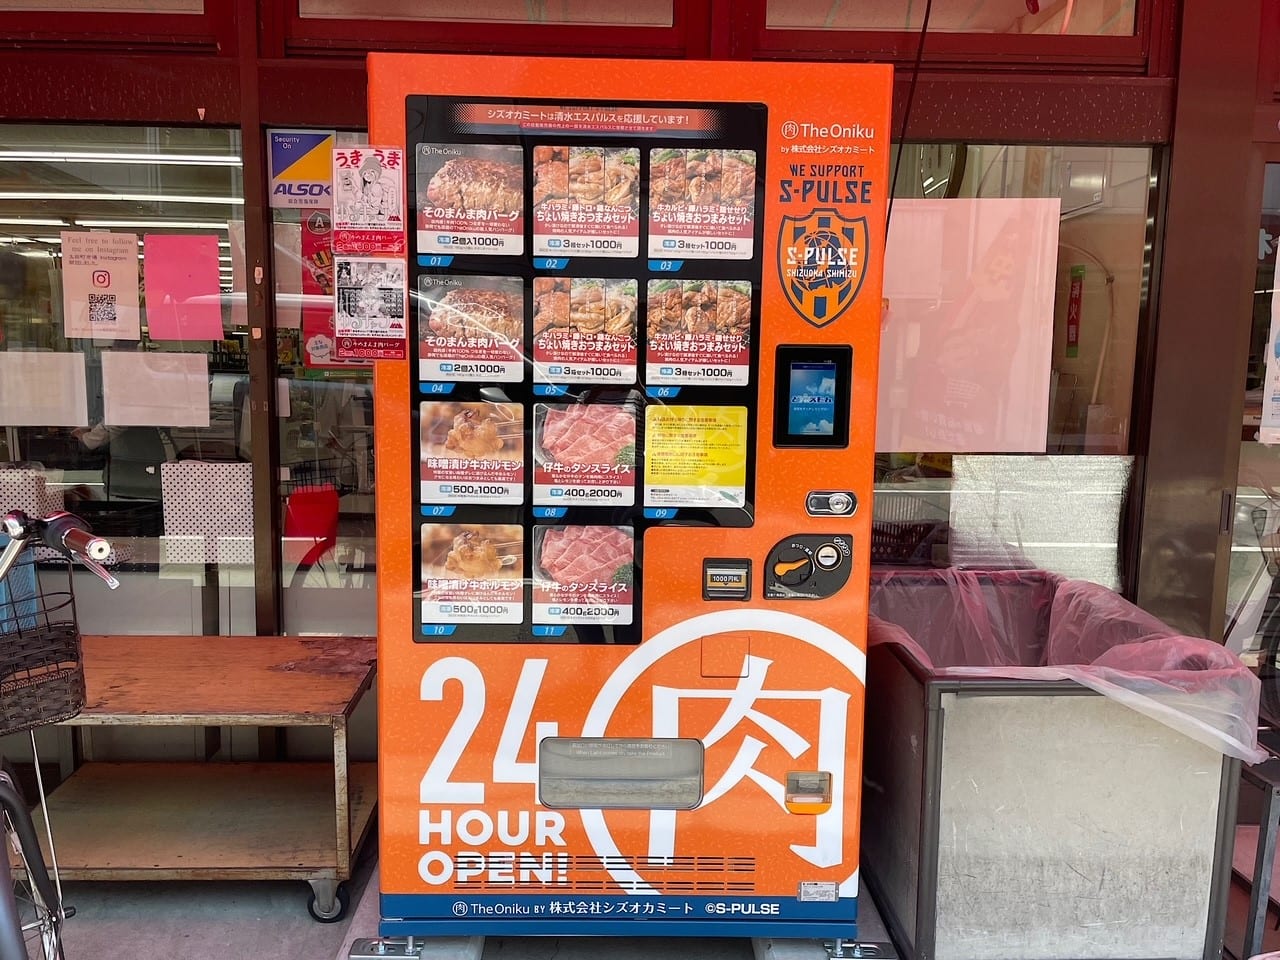 太田町市場でお肉の自動販売機を見つけました